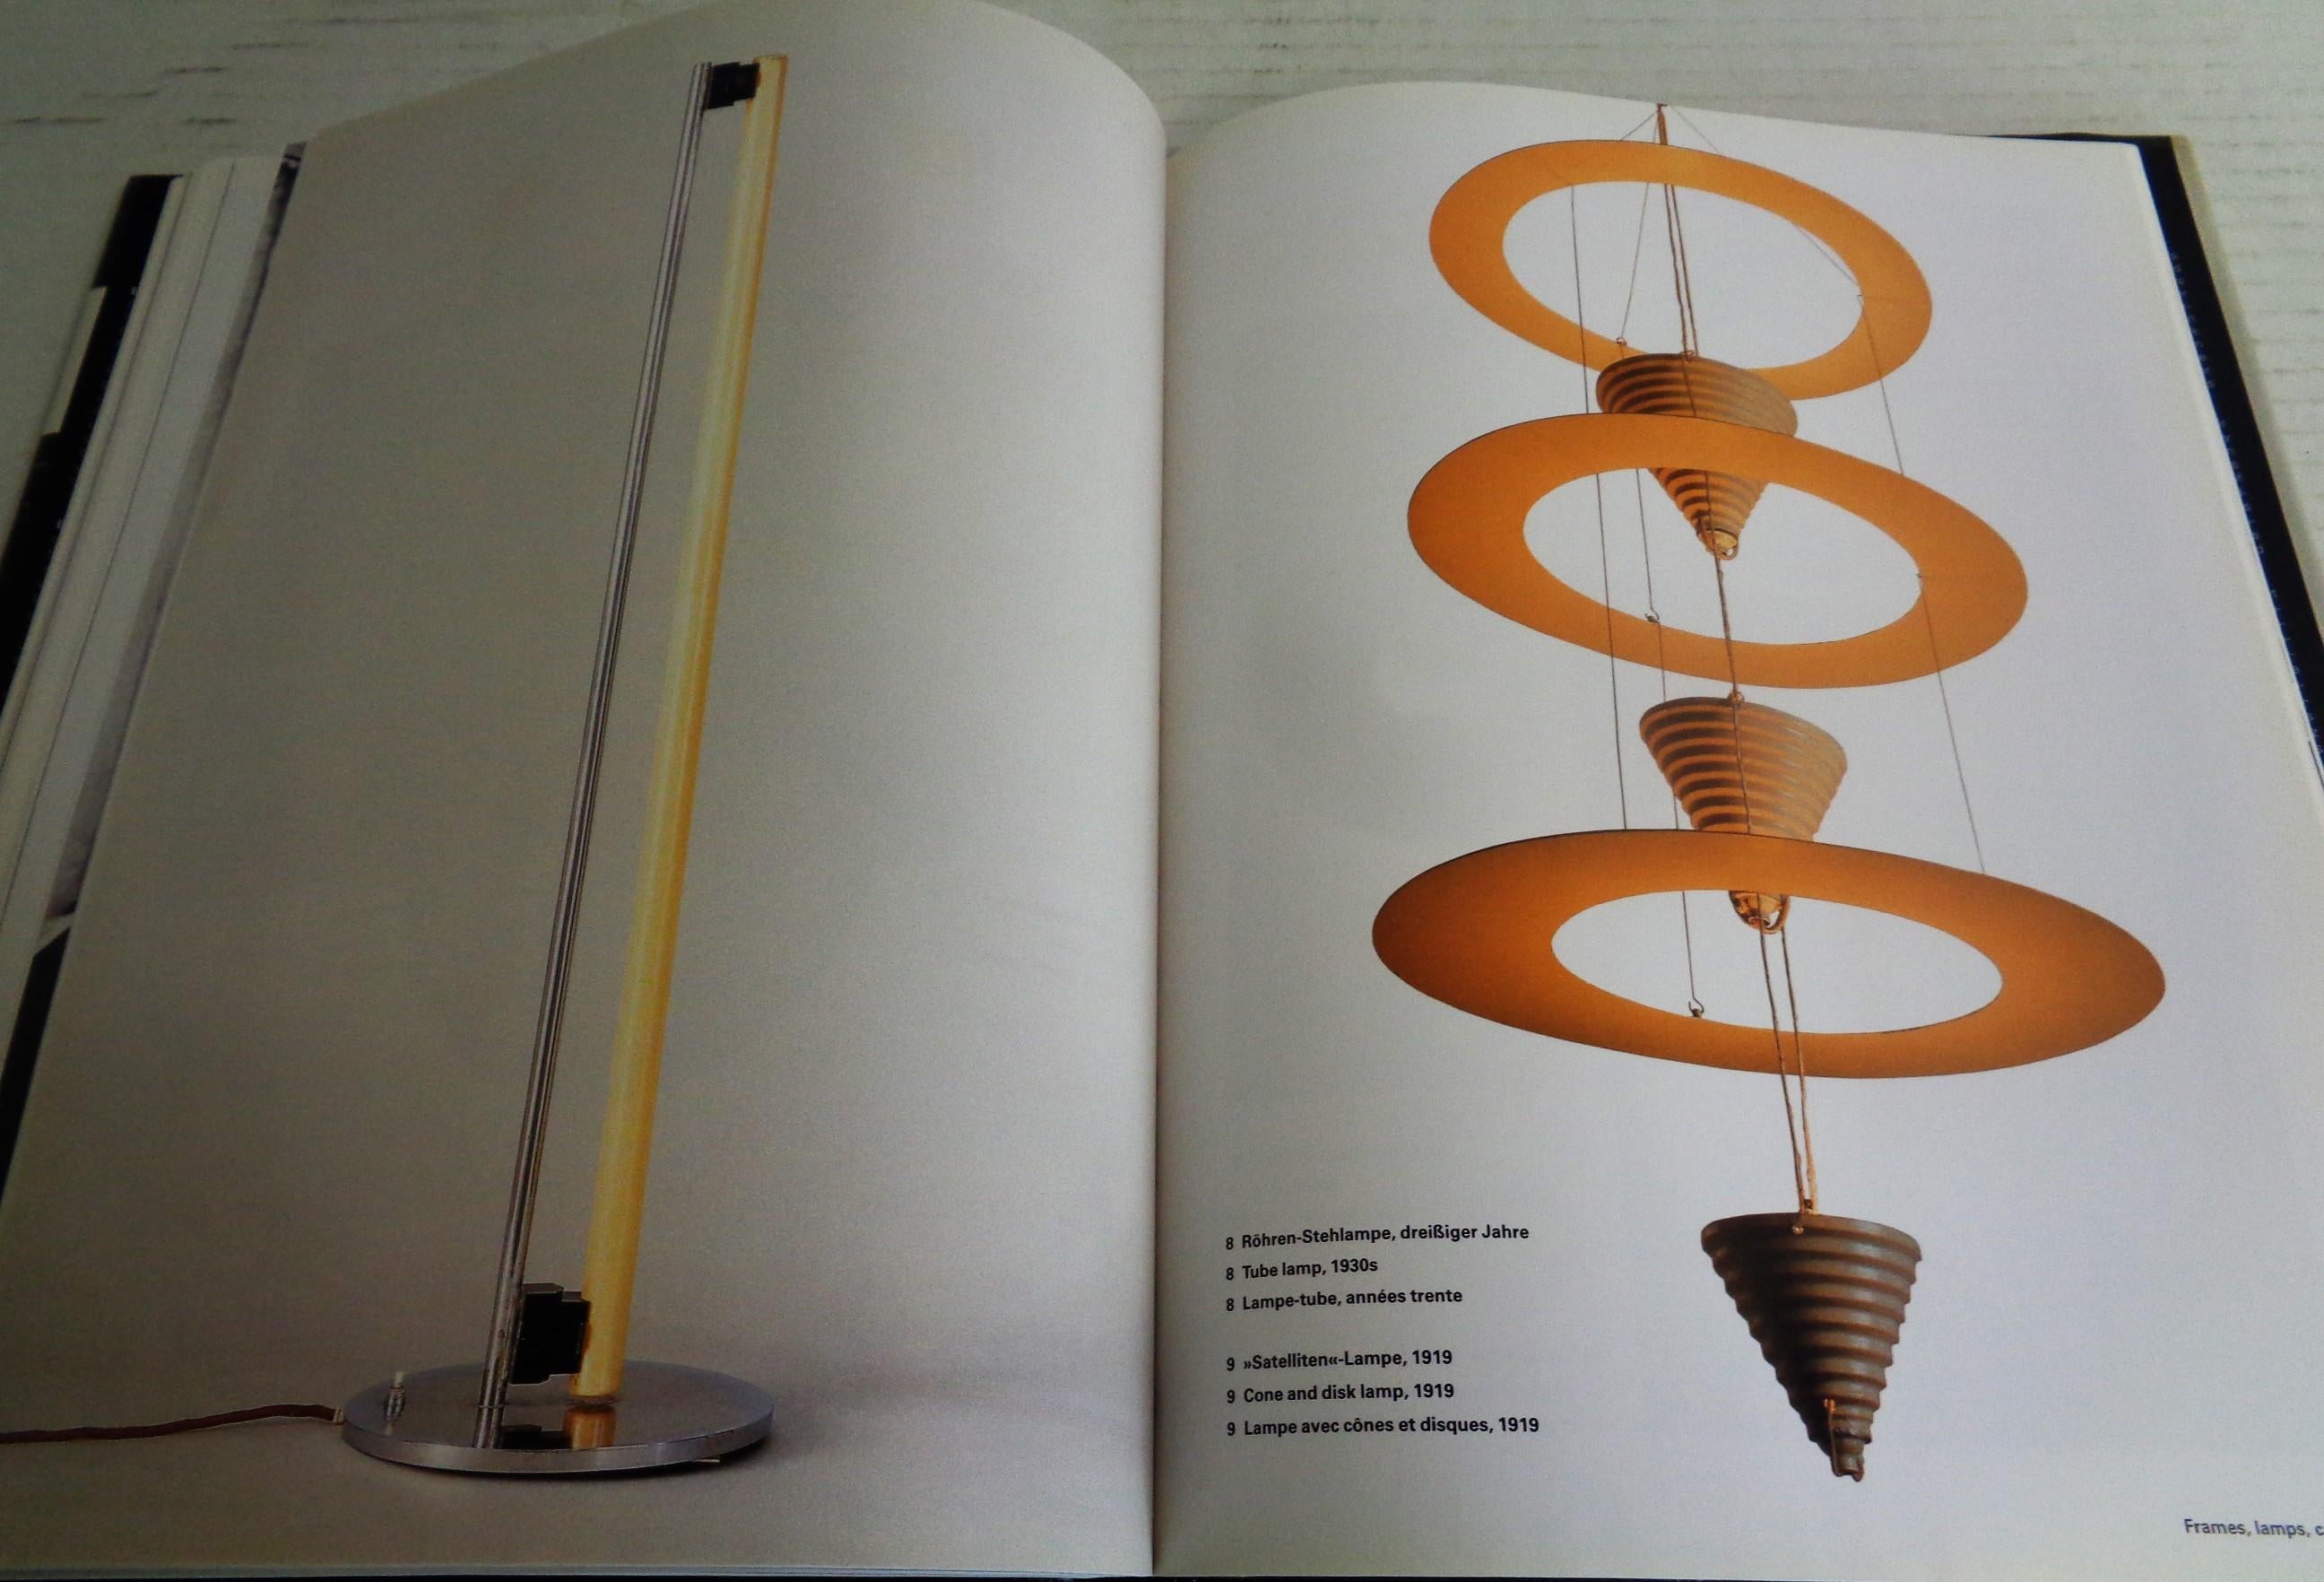 Eileen Gray - Design and Architecture - Garner, Philippe - 2006 Taschen 9